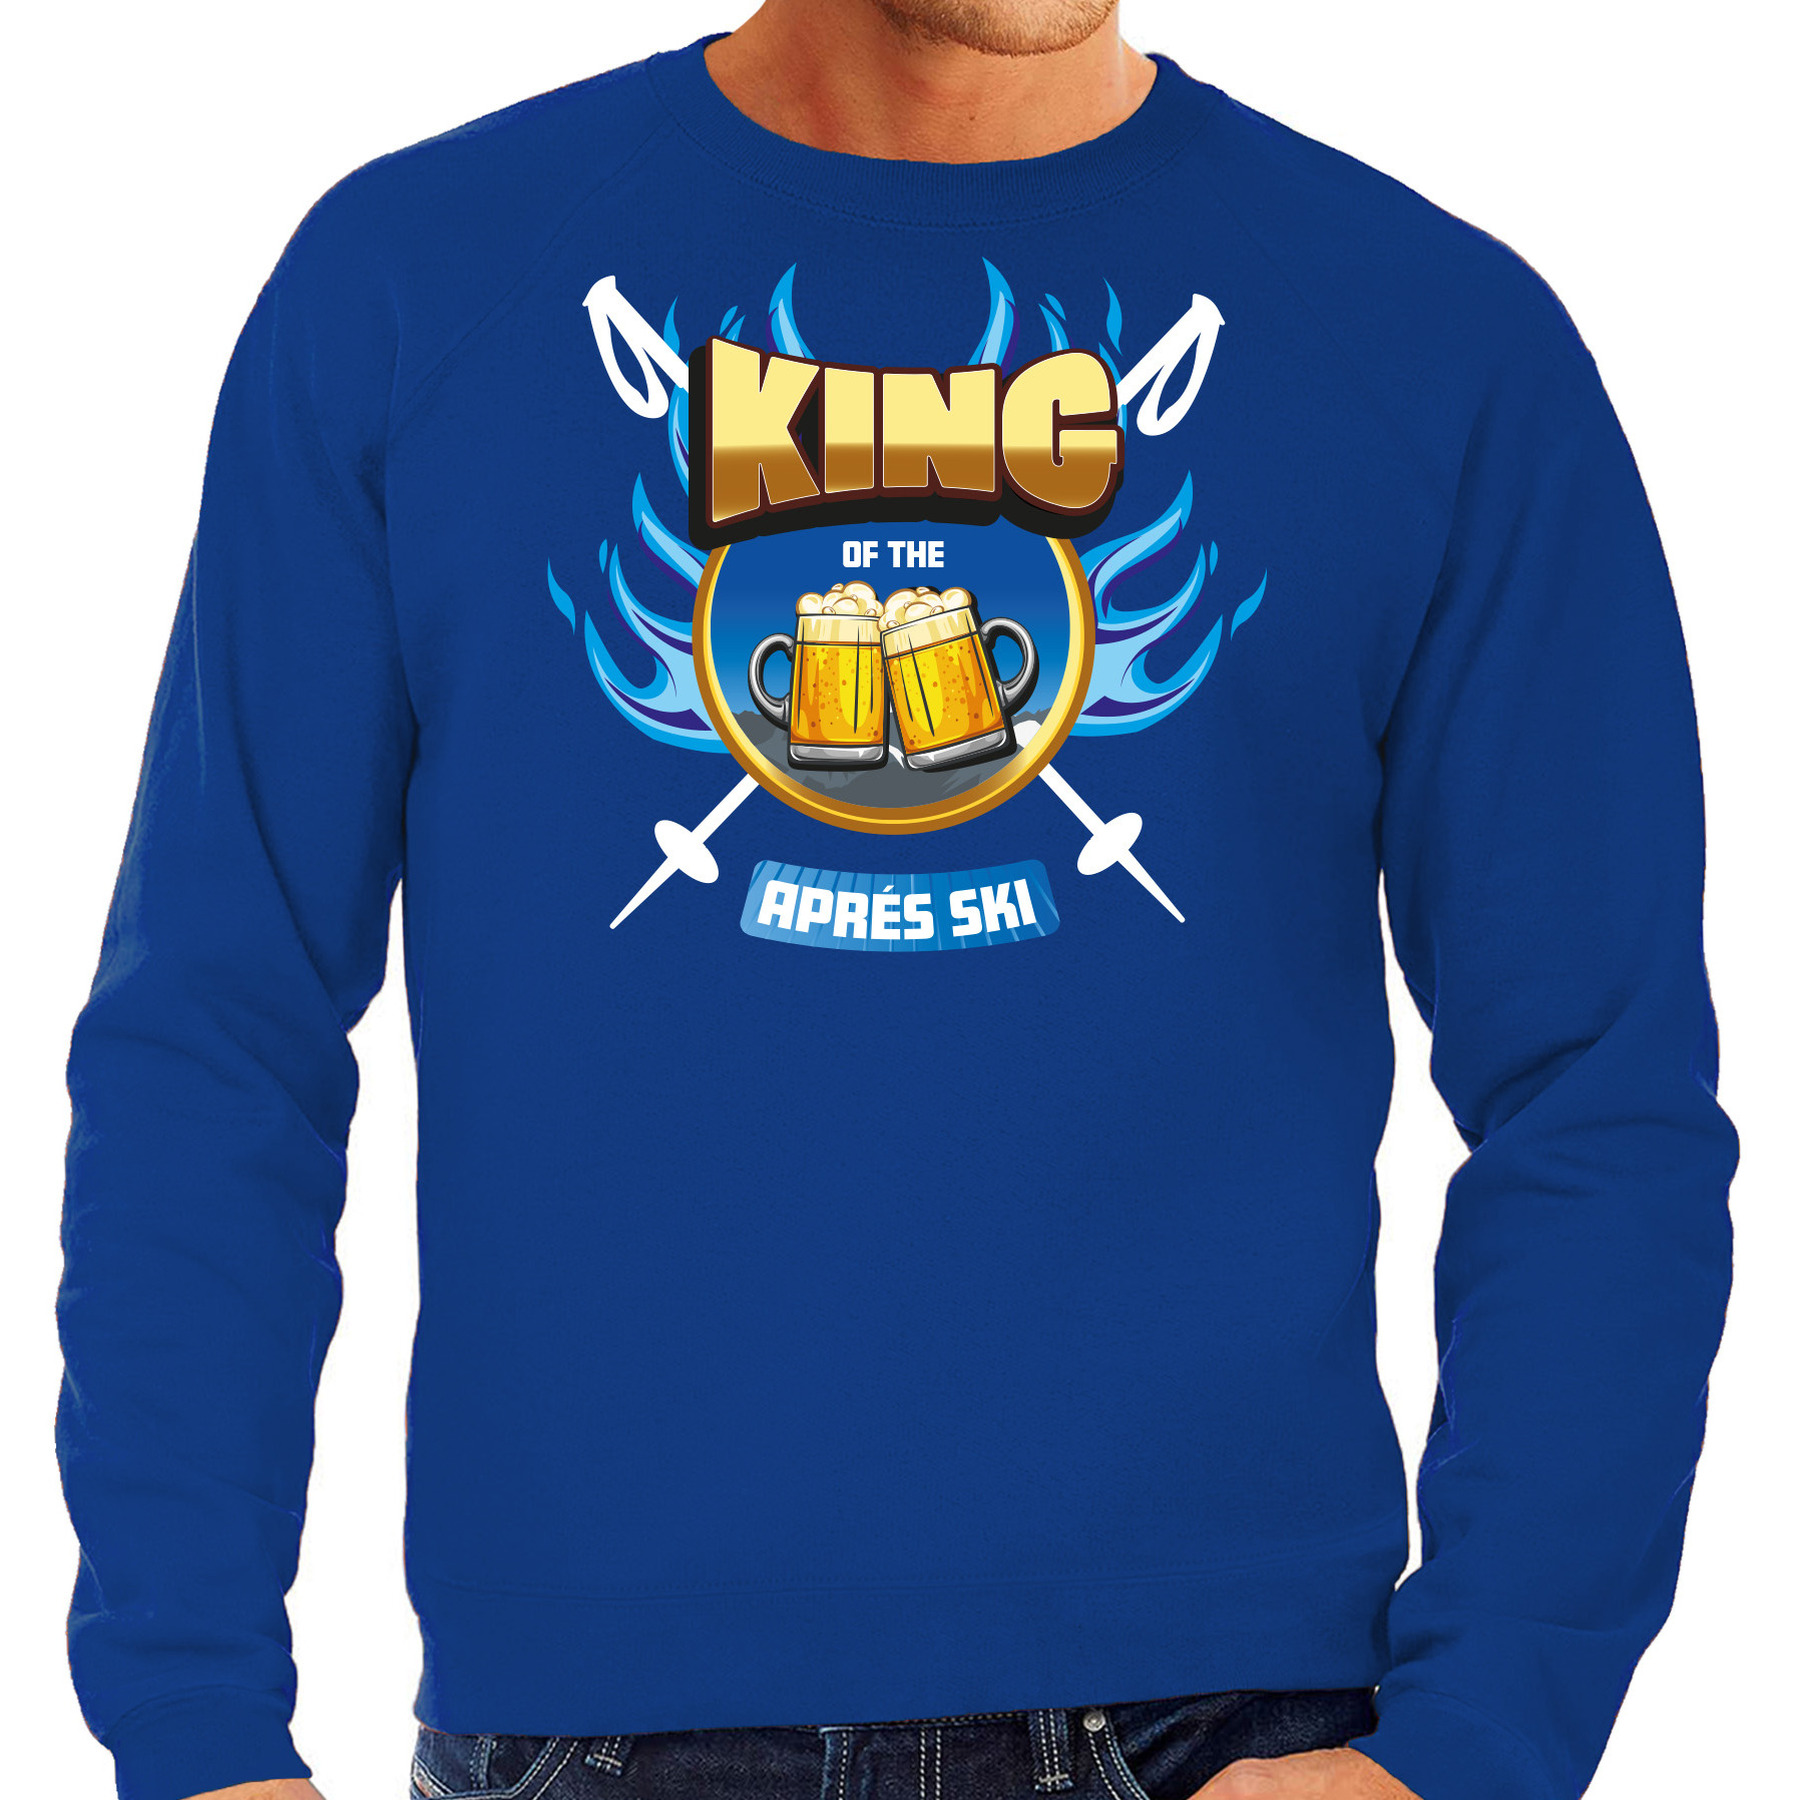 Apres ski sweater voor heren king of the apres ski blauw winter trui